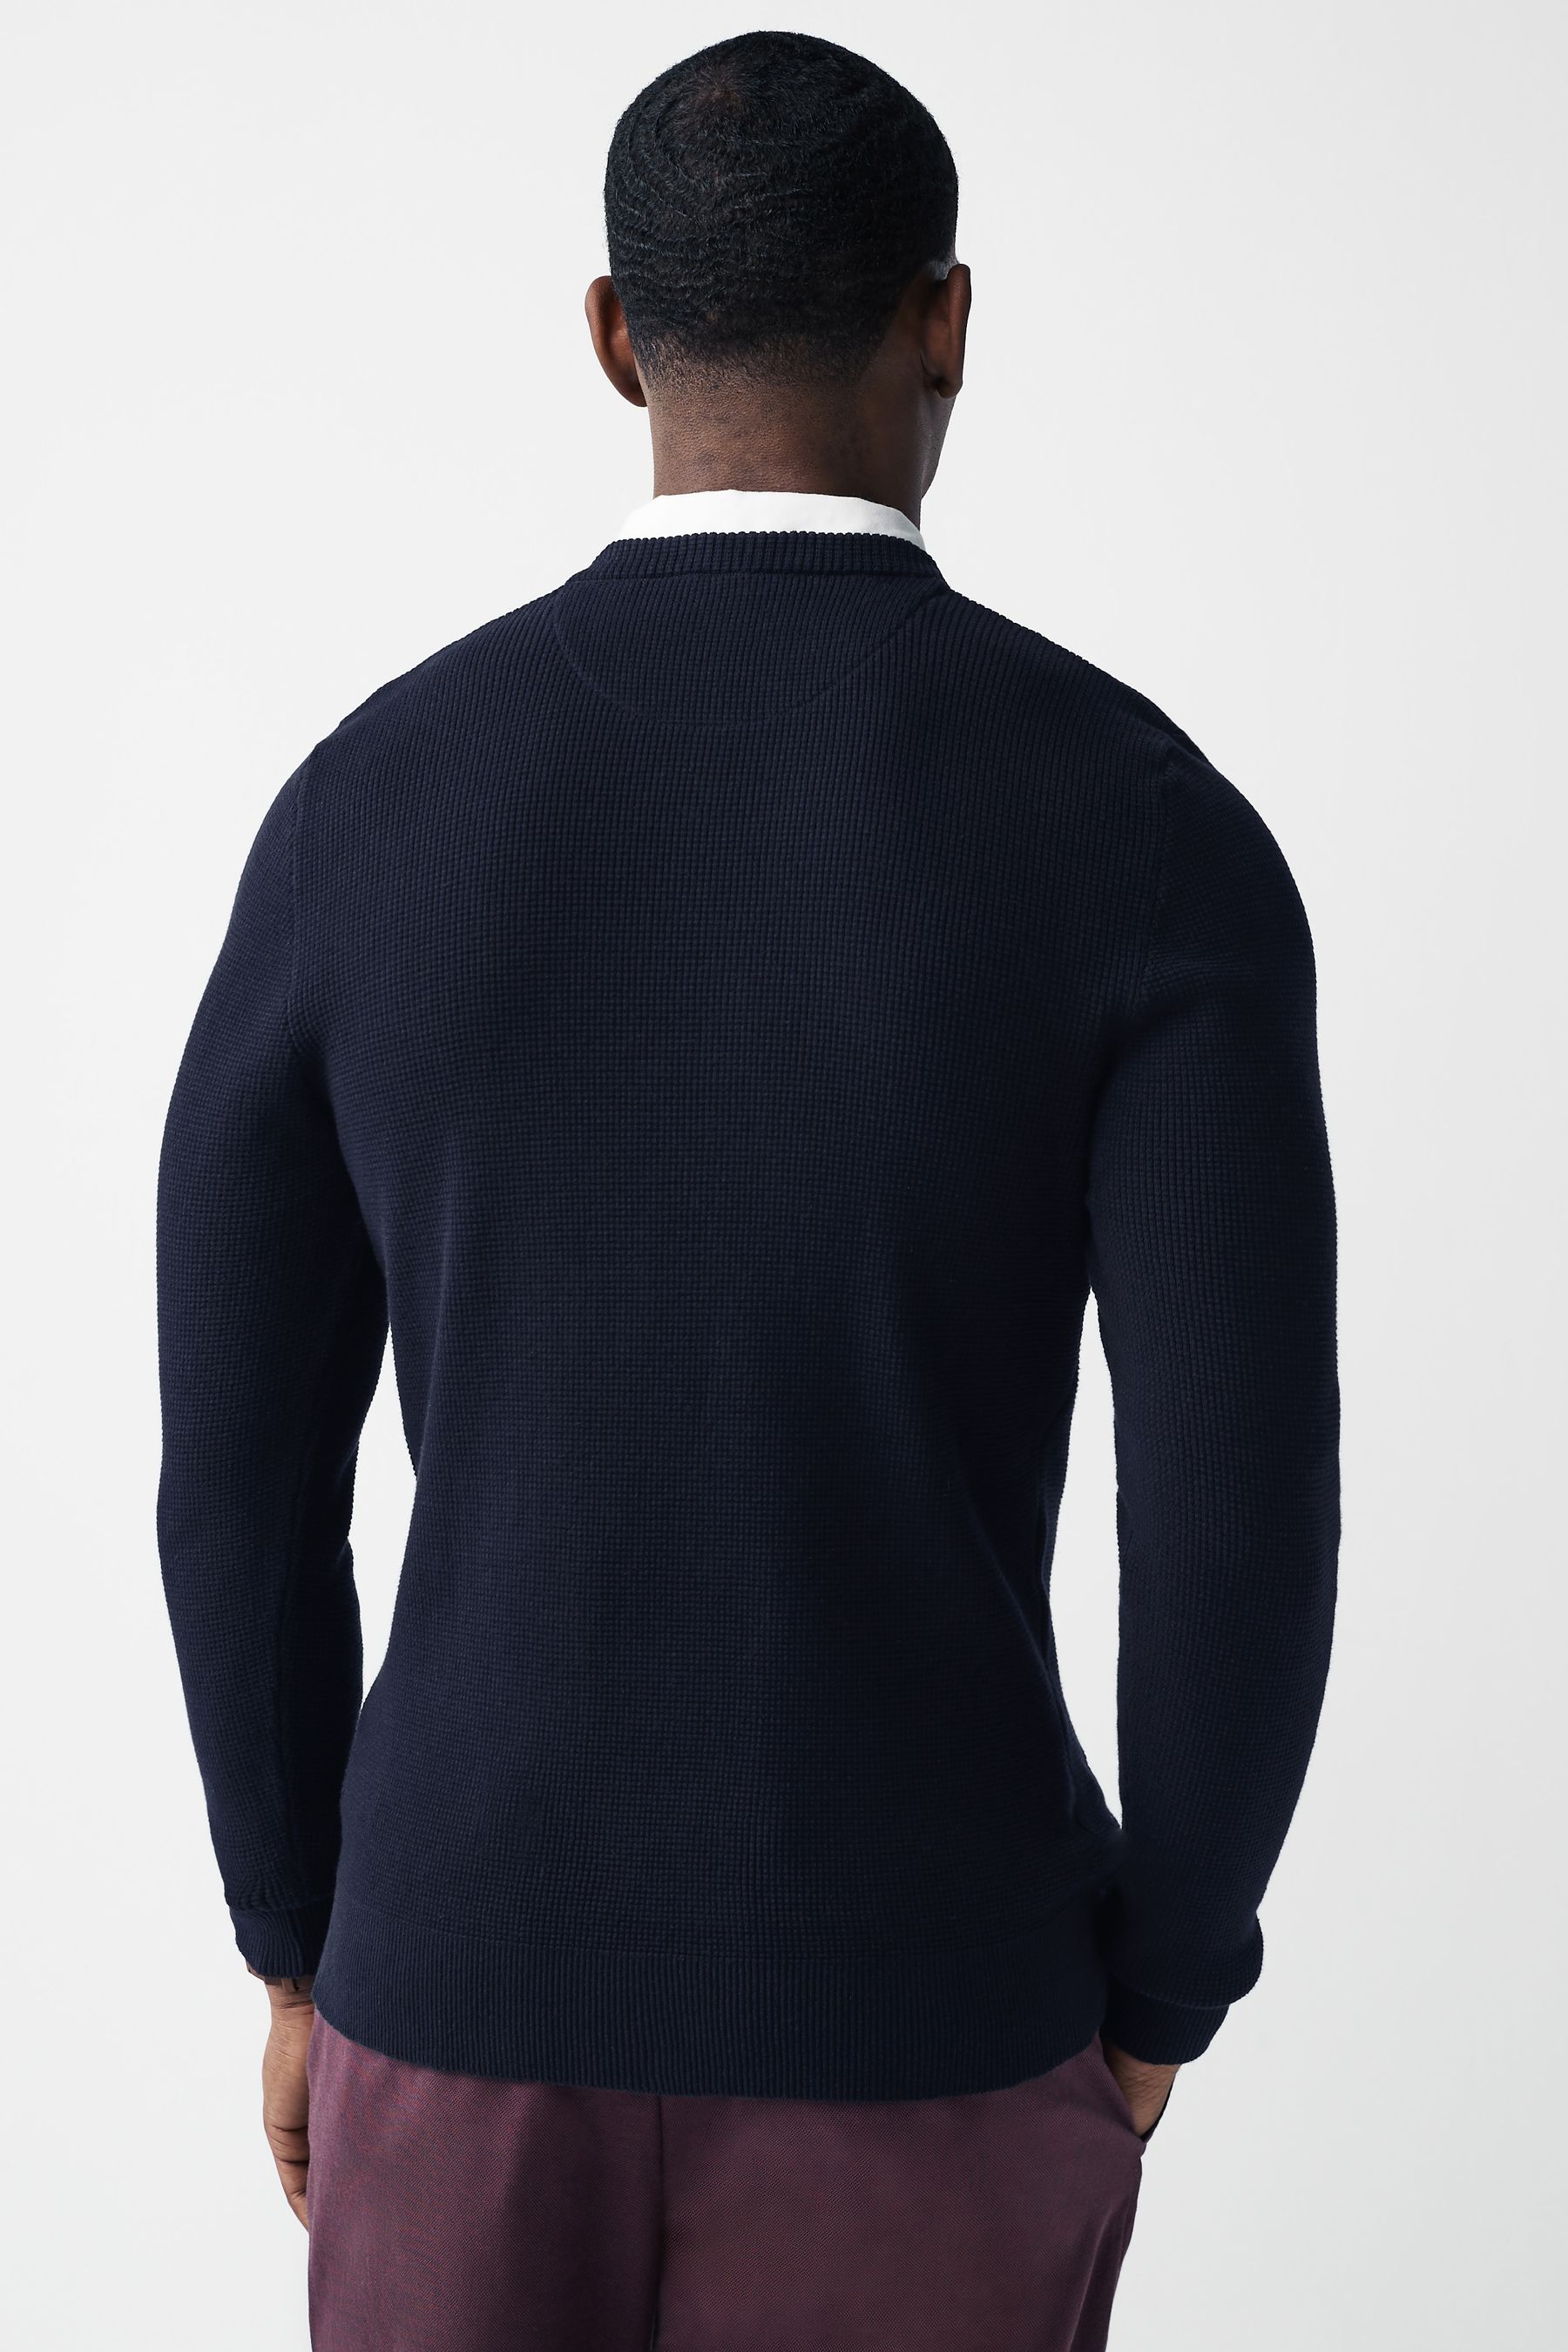 Buy Navy Blue V-Neck Regular Mock Shirt Jumper from the Next UK online shop